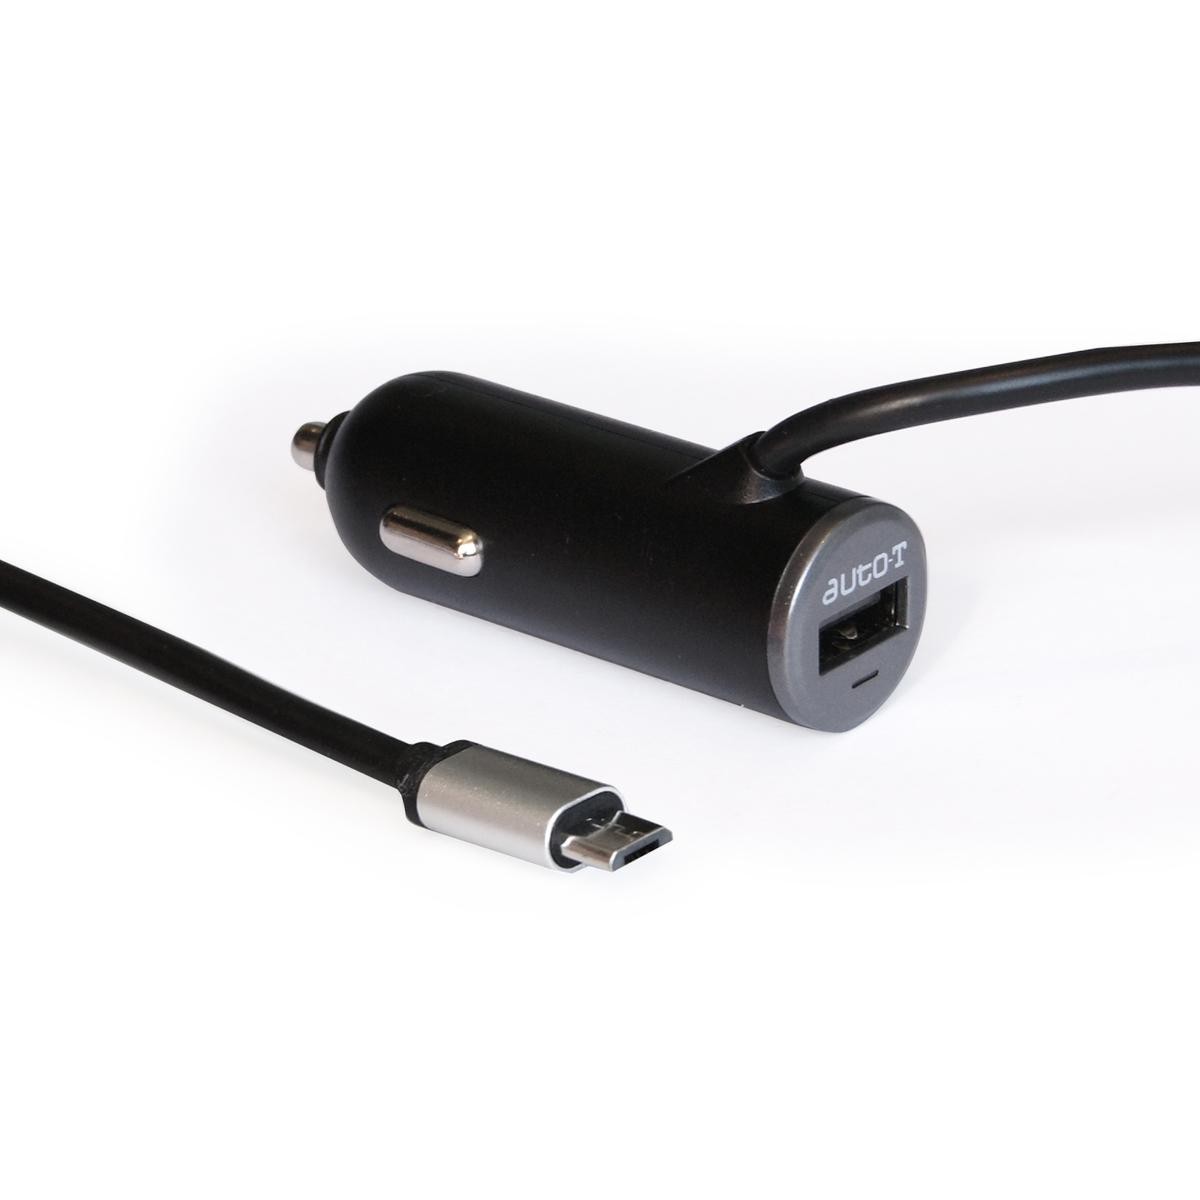 540322 AUTO-T Handy-Ladegerät fürs Auto mit USB-Kabel, micro USB, USB  type-A 540322 ❱❱❱ Preis und Erfahrungen